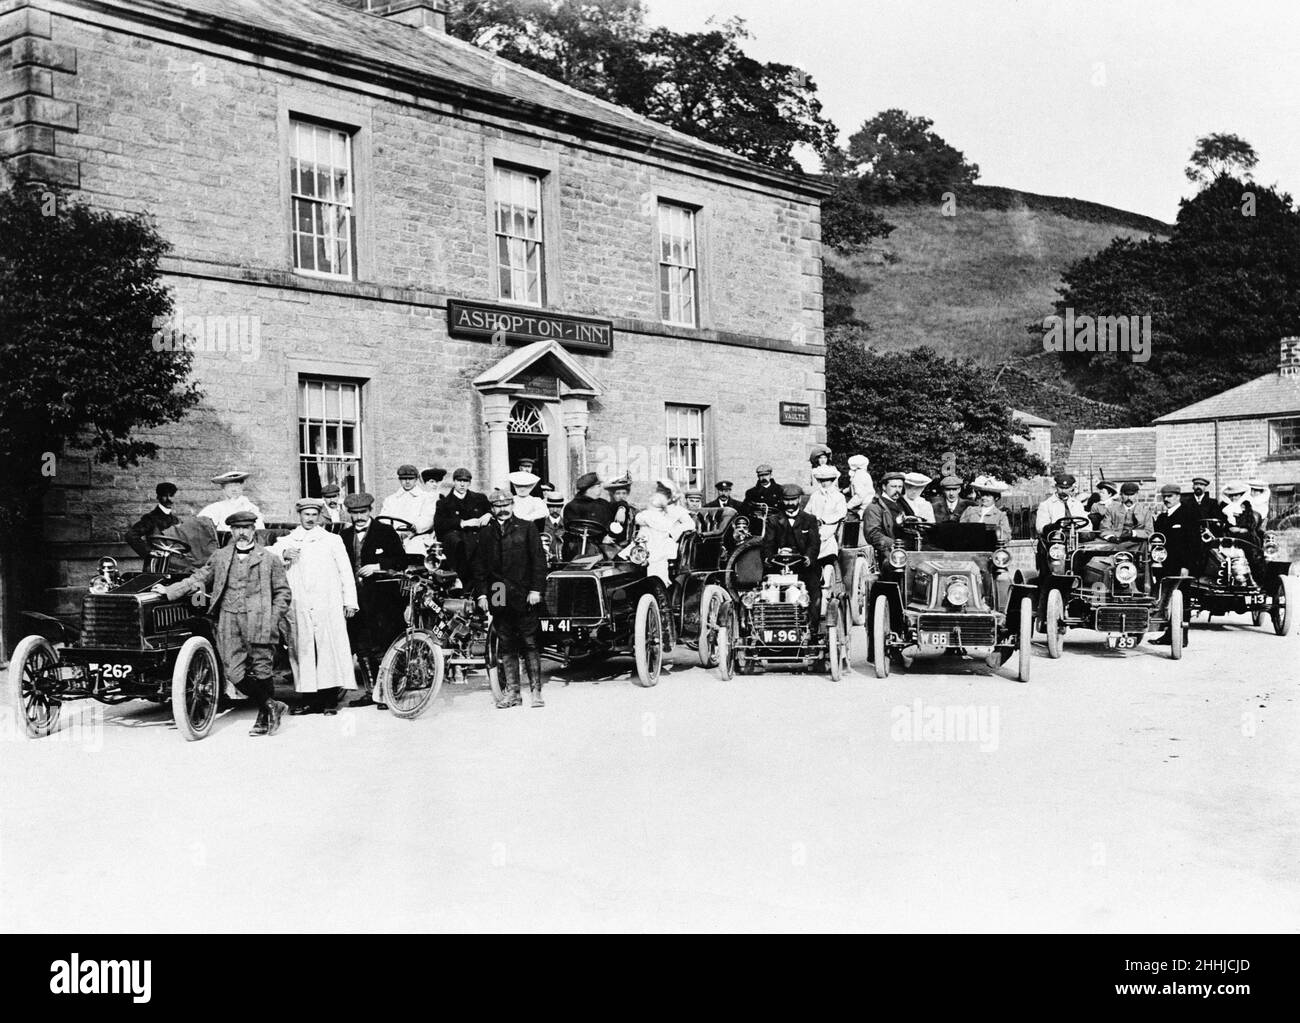 Sheffield automobile Club devant l'Ashopton Inn, Derwent, Derbyshire en 1904, aujourd'hui submergé sous le réservoir Ladybower. Banque D'Images